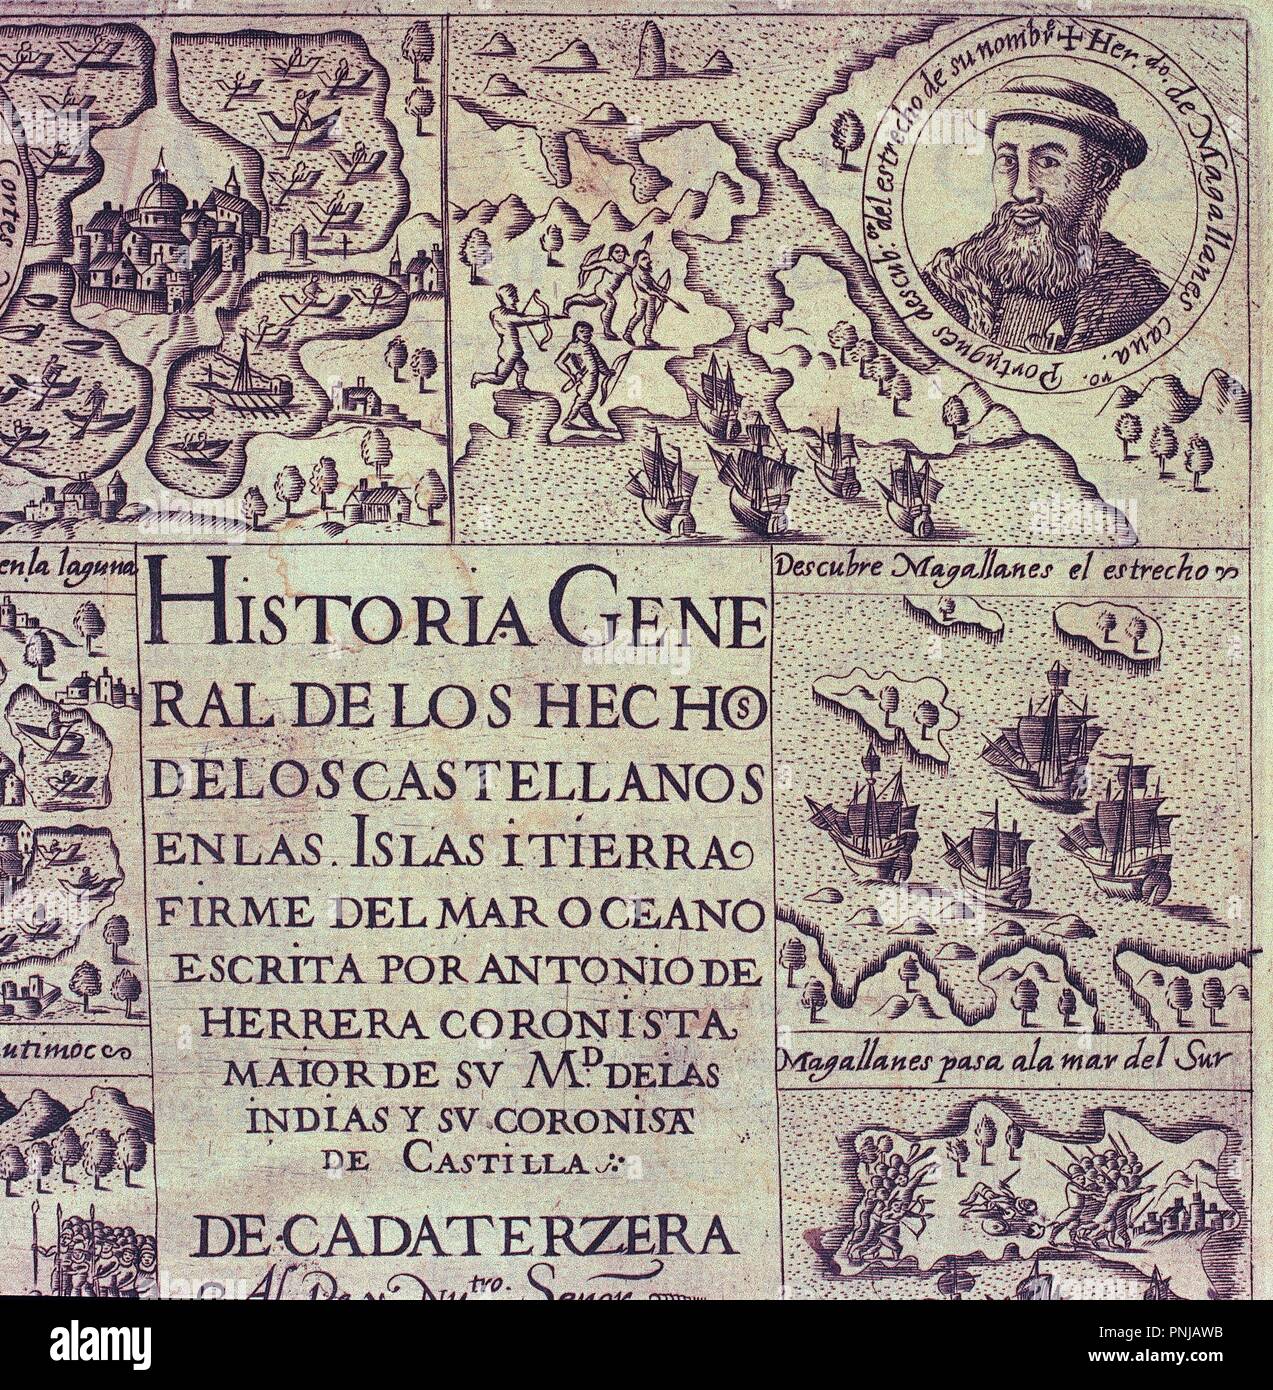 HIST. GRAL DE HECHOS CASTELLANOS - DECADA TERCERA -. Autor: HERRERA Y CASTILLA ANTONIO. Lage: Biblioteca Nacional - coleccion. MADRID. Spanien. Stockfoto